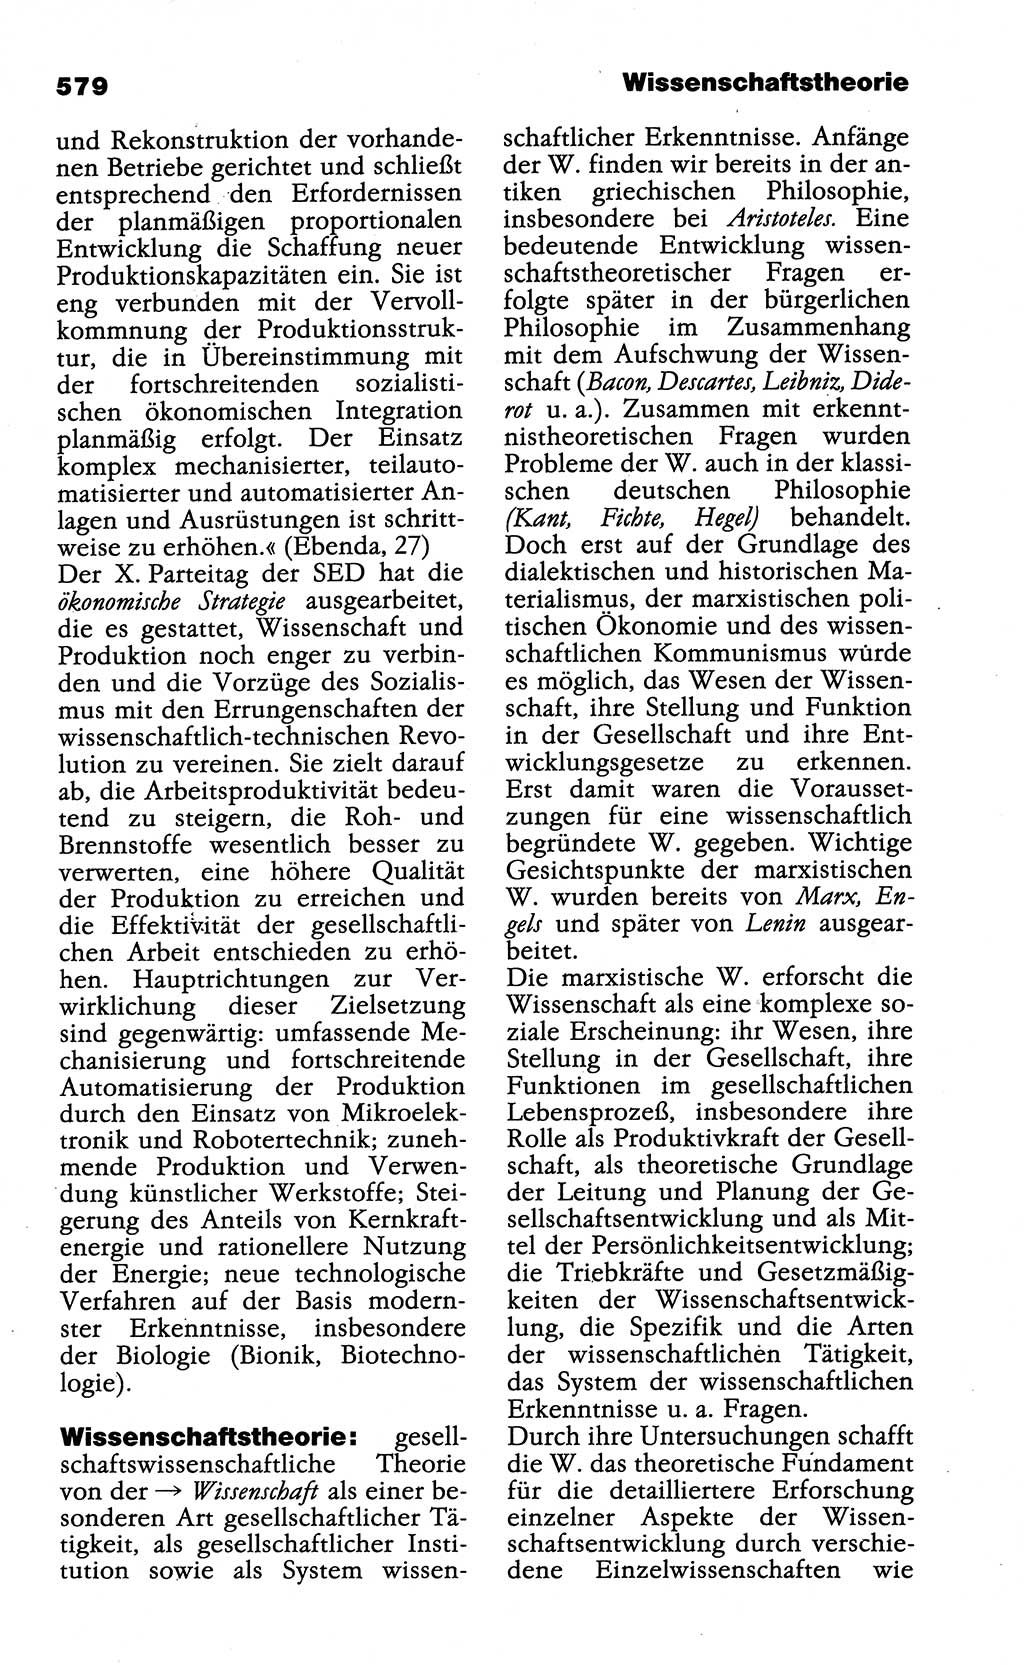 Wörterbuch der marxistisch-leninistischen Philosophie [Deutsche Demokratische Republik (DDR)] 1985, Seite 579 (Wb. ML Phil. DDR 1985, S. 579)